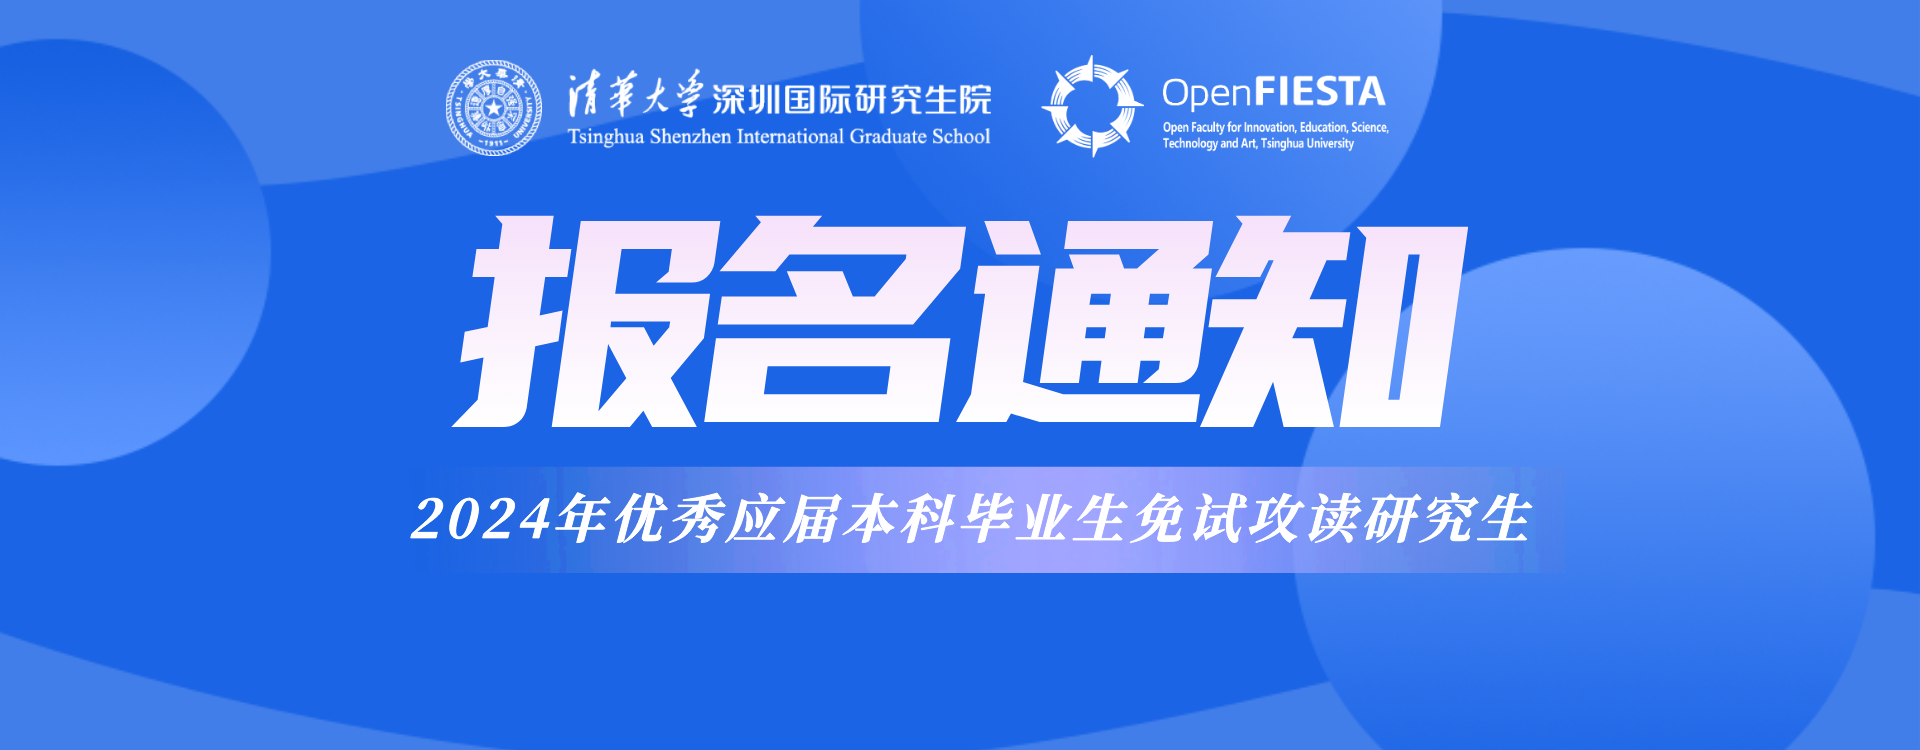 清华大学深圳国际研究生院Open FIESTA 2024年接收优秀应届本科毕业生免试攻读研究生报名通知